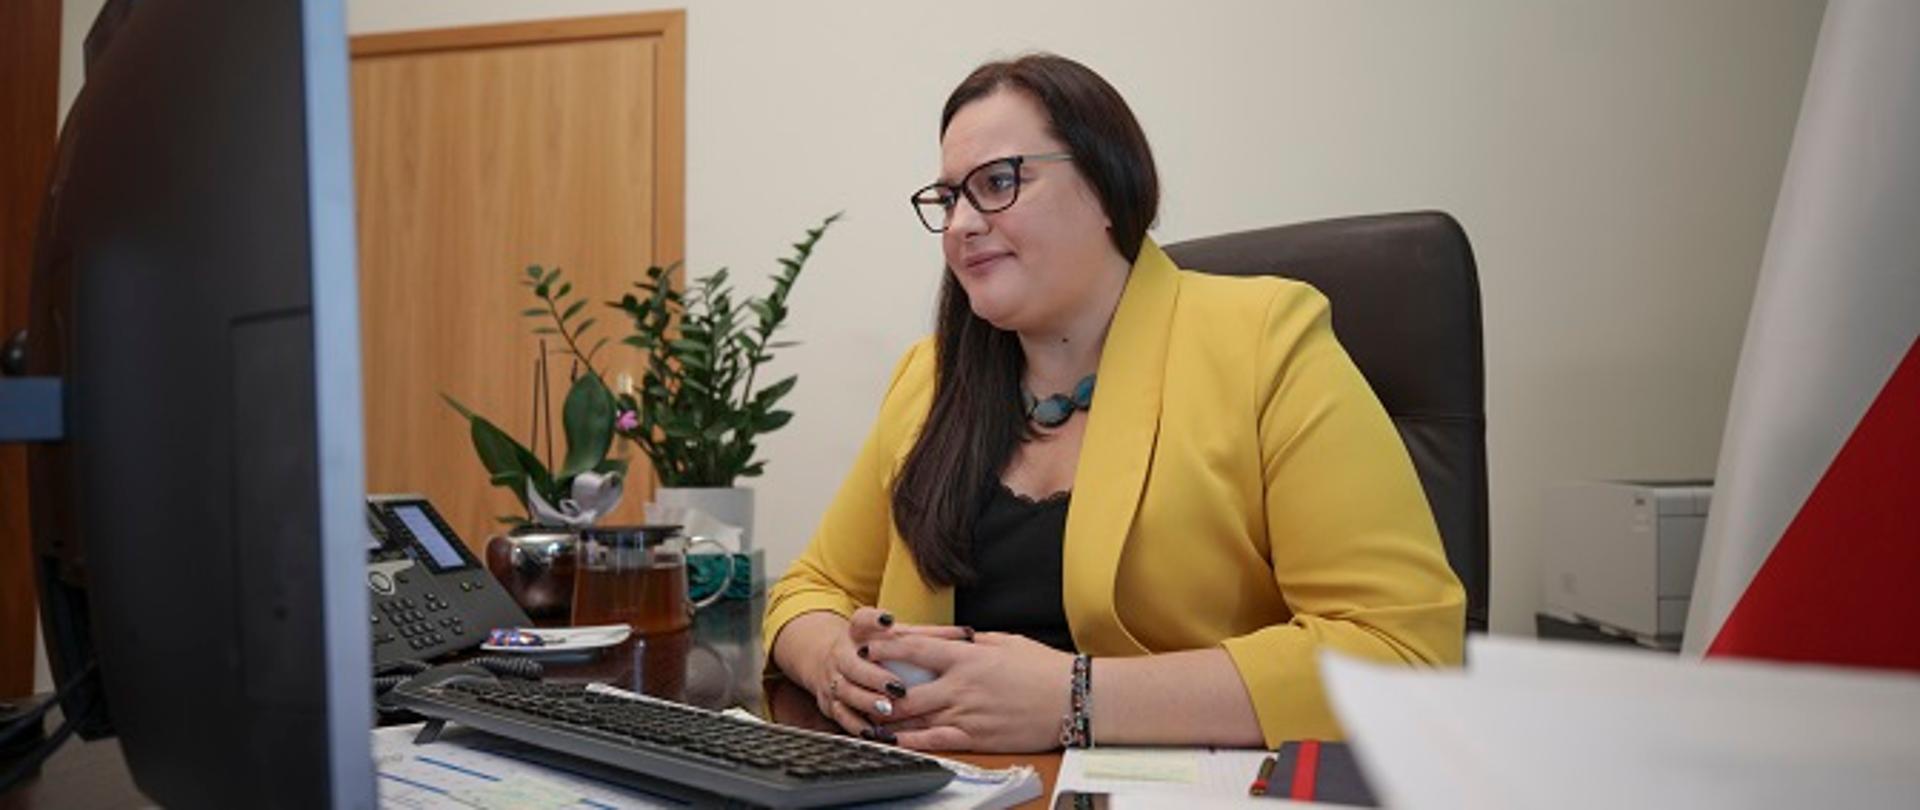 Minister Małgorzata Jarosińska-Jedynak siedzi przy swoim biurku, przed komputerem, gdzie online odbywa się wideokonferencja z podmiotami, które przystąpiły do Partnerstwa na rzecz Dostępności.